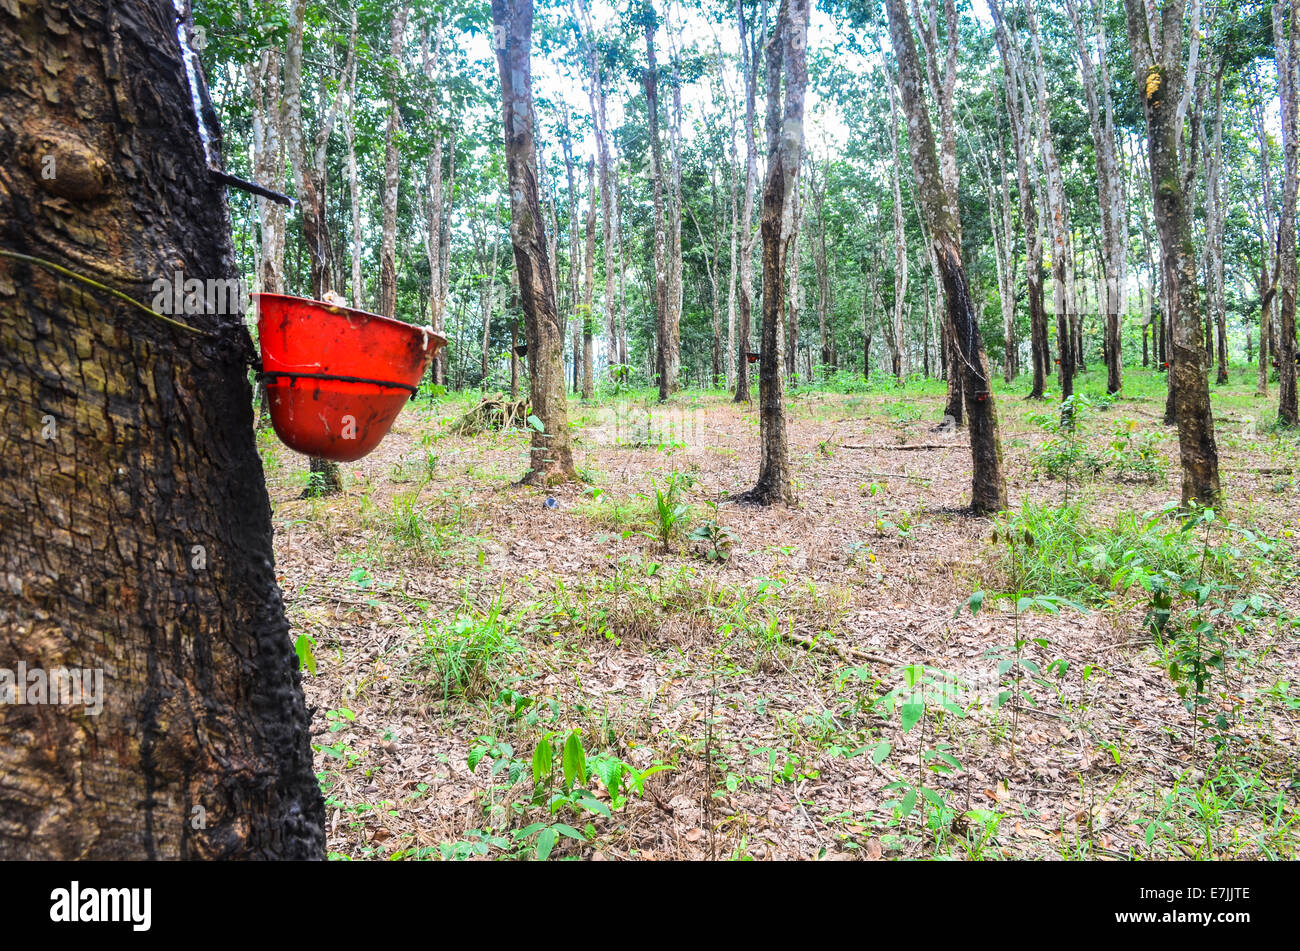 Latex, gesammelt von einem Hevea-Baum in der Firestone Natural Rubber Company-Plantage in Liberia Stockfoto